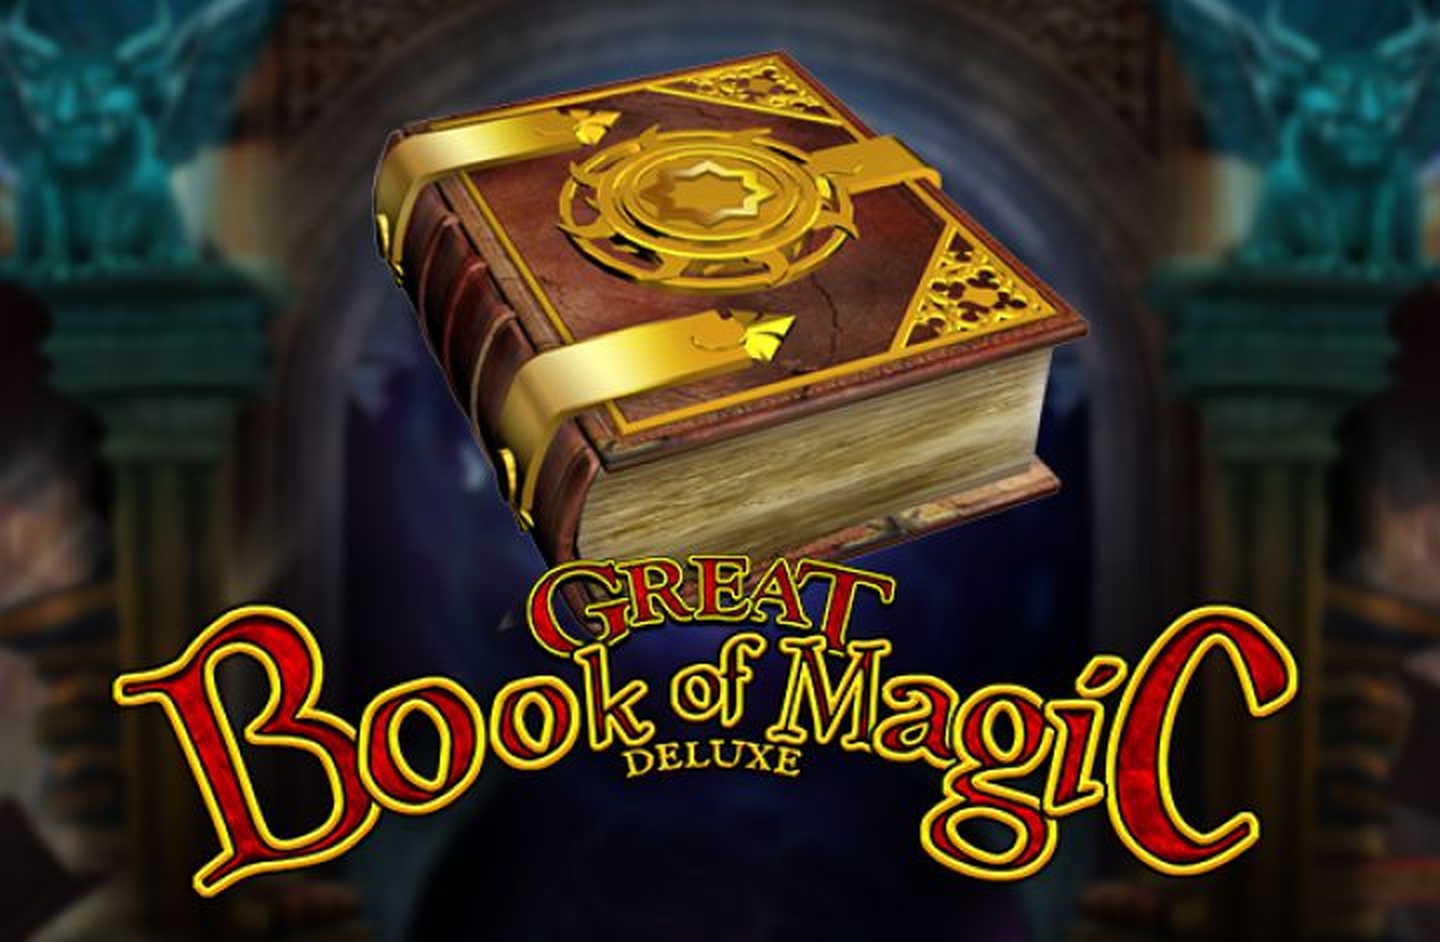 Great Book of Magic demo